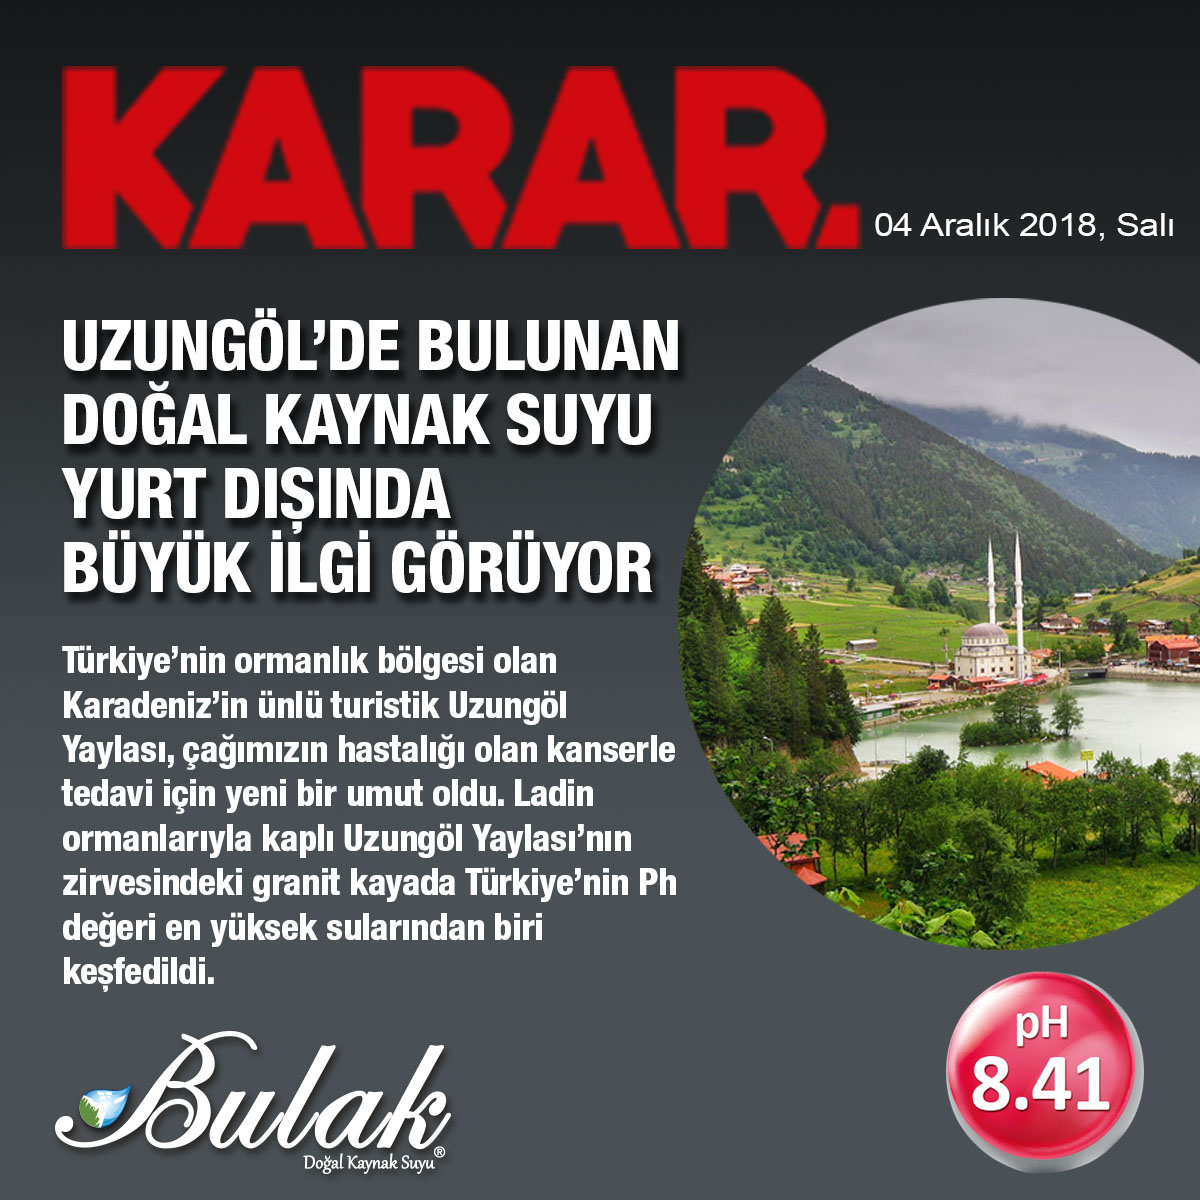 Türkiye’nin en yüksek pH’lı suyu Uzungöl’de bulundu